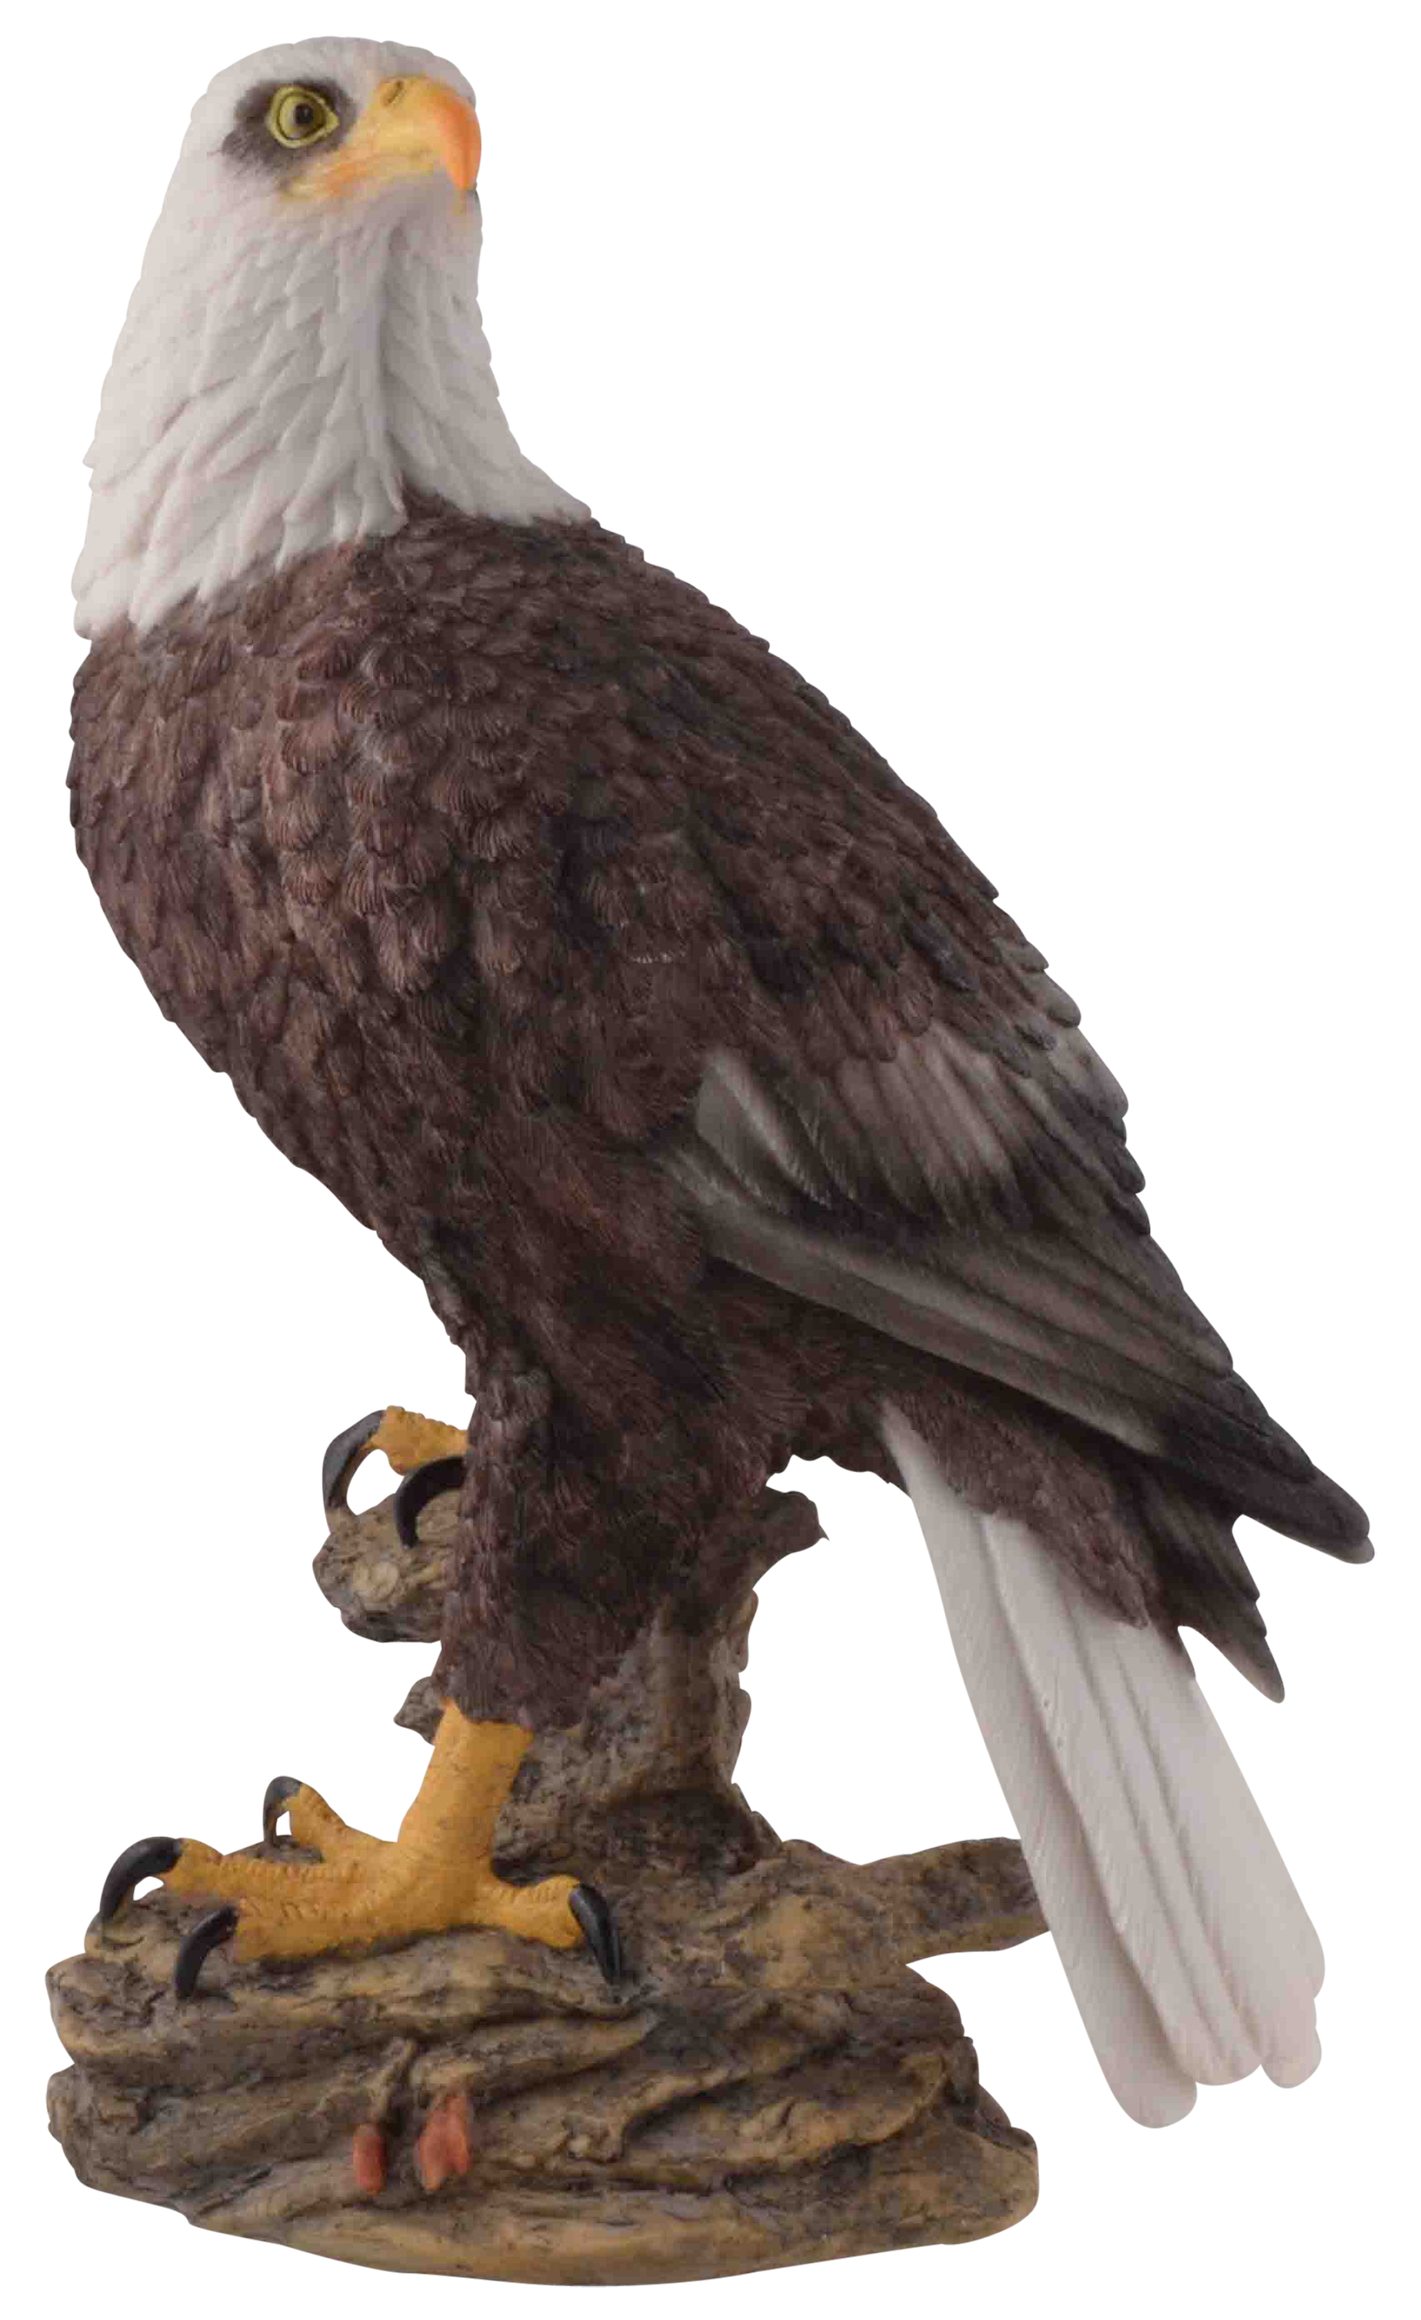 Vogler direct Gmbh Tierfigur Amerikanischer Weißkopfseeadler, Kunststein, von Künstlerhand bemalt, coloriert, LxBxH ca. 22x14x35 cm